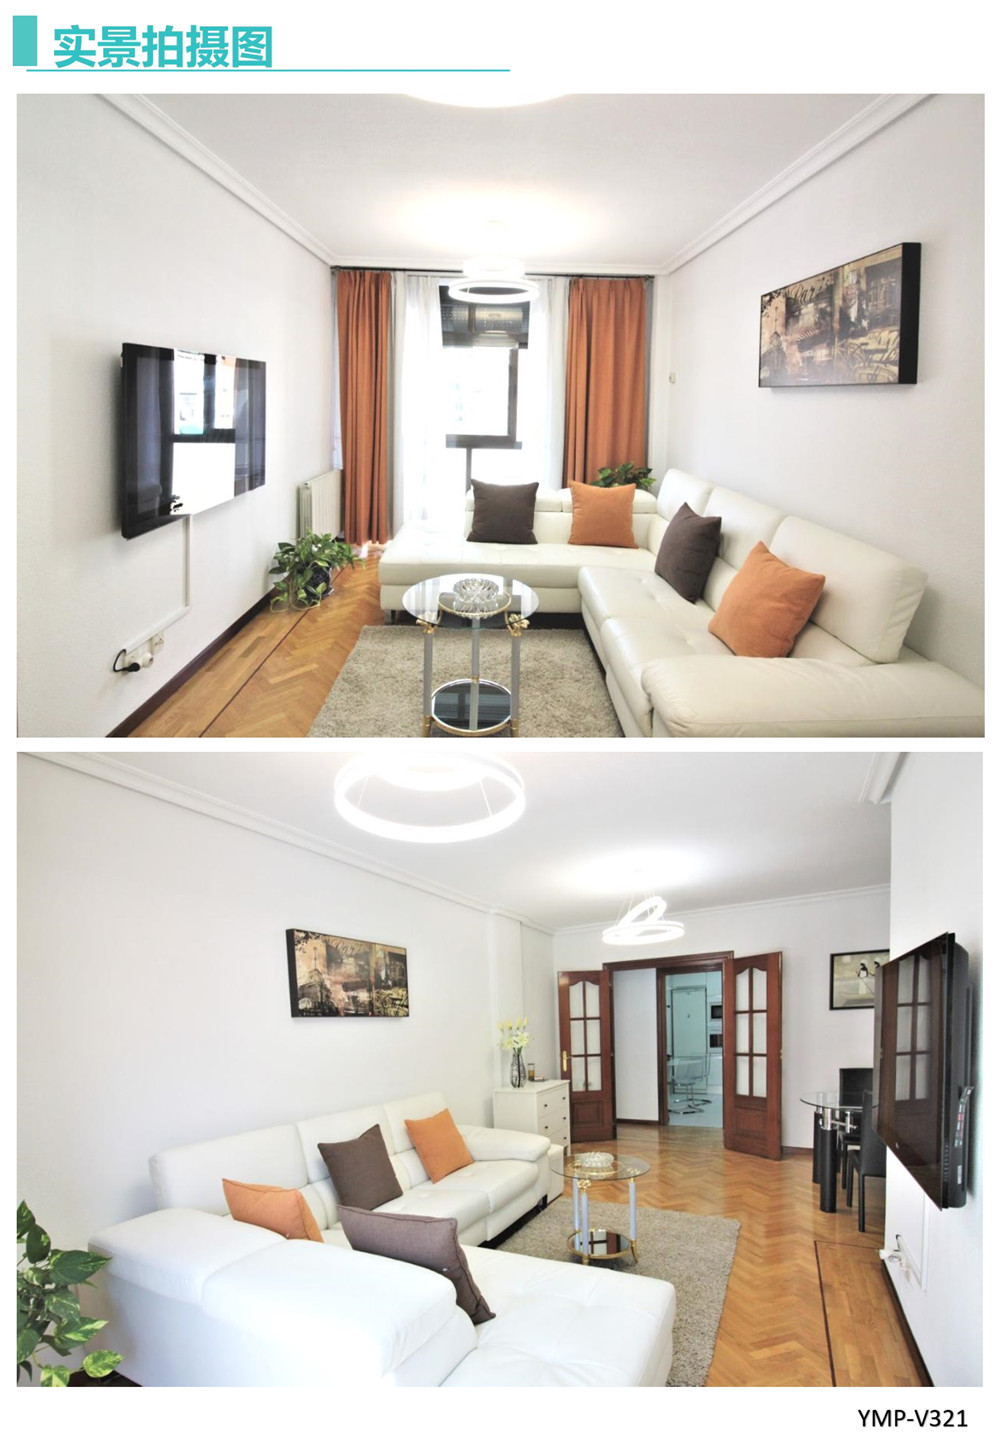 西班牙马德里富人区现代三居室公寓140平米